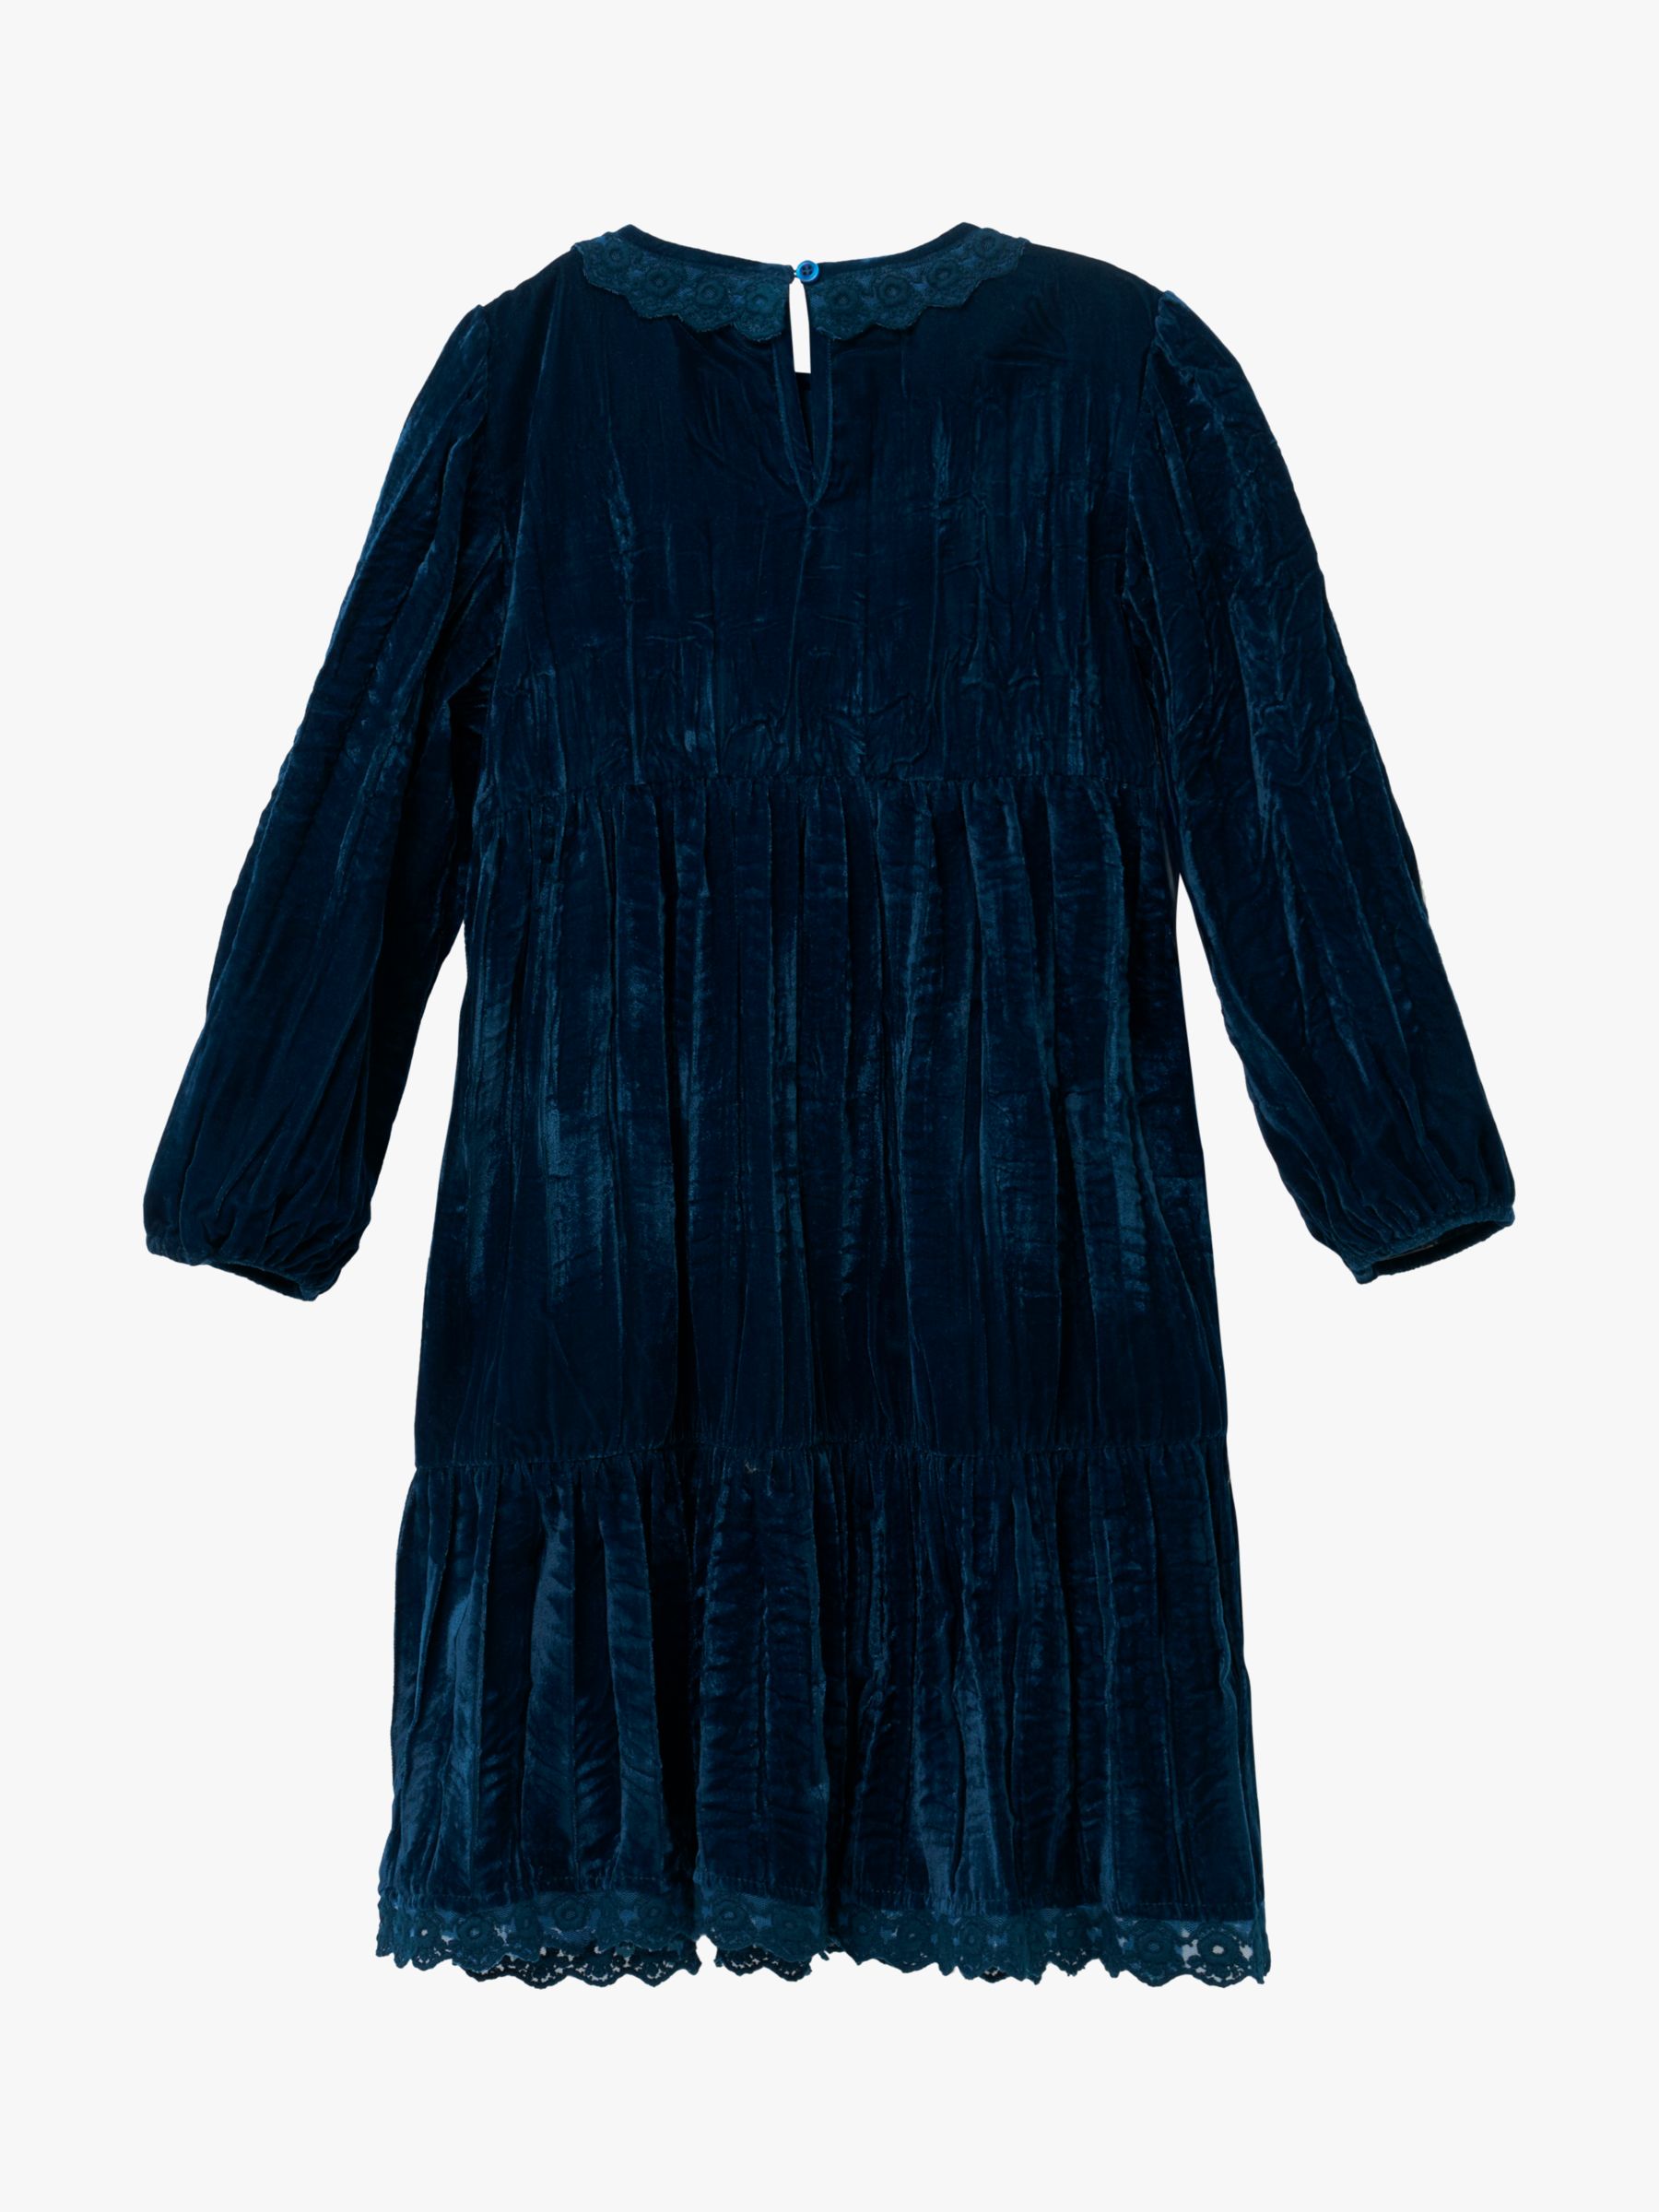 Buy Angel & Rocket Kids' Mia Crushed Velvet Lace Collar Dress, Teal Online at johnlewis.com